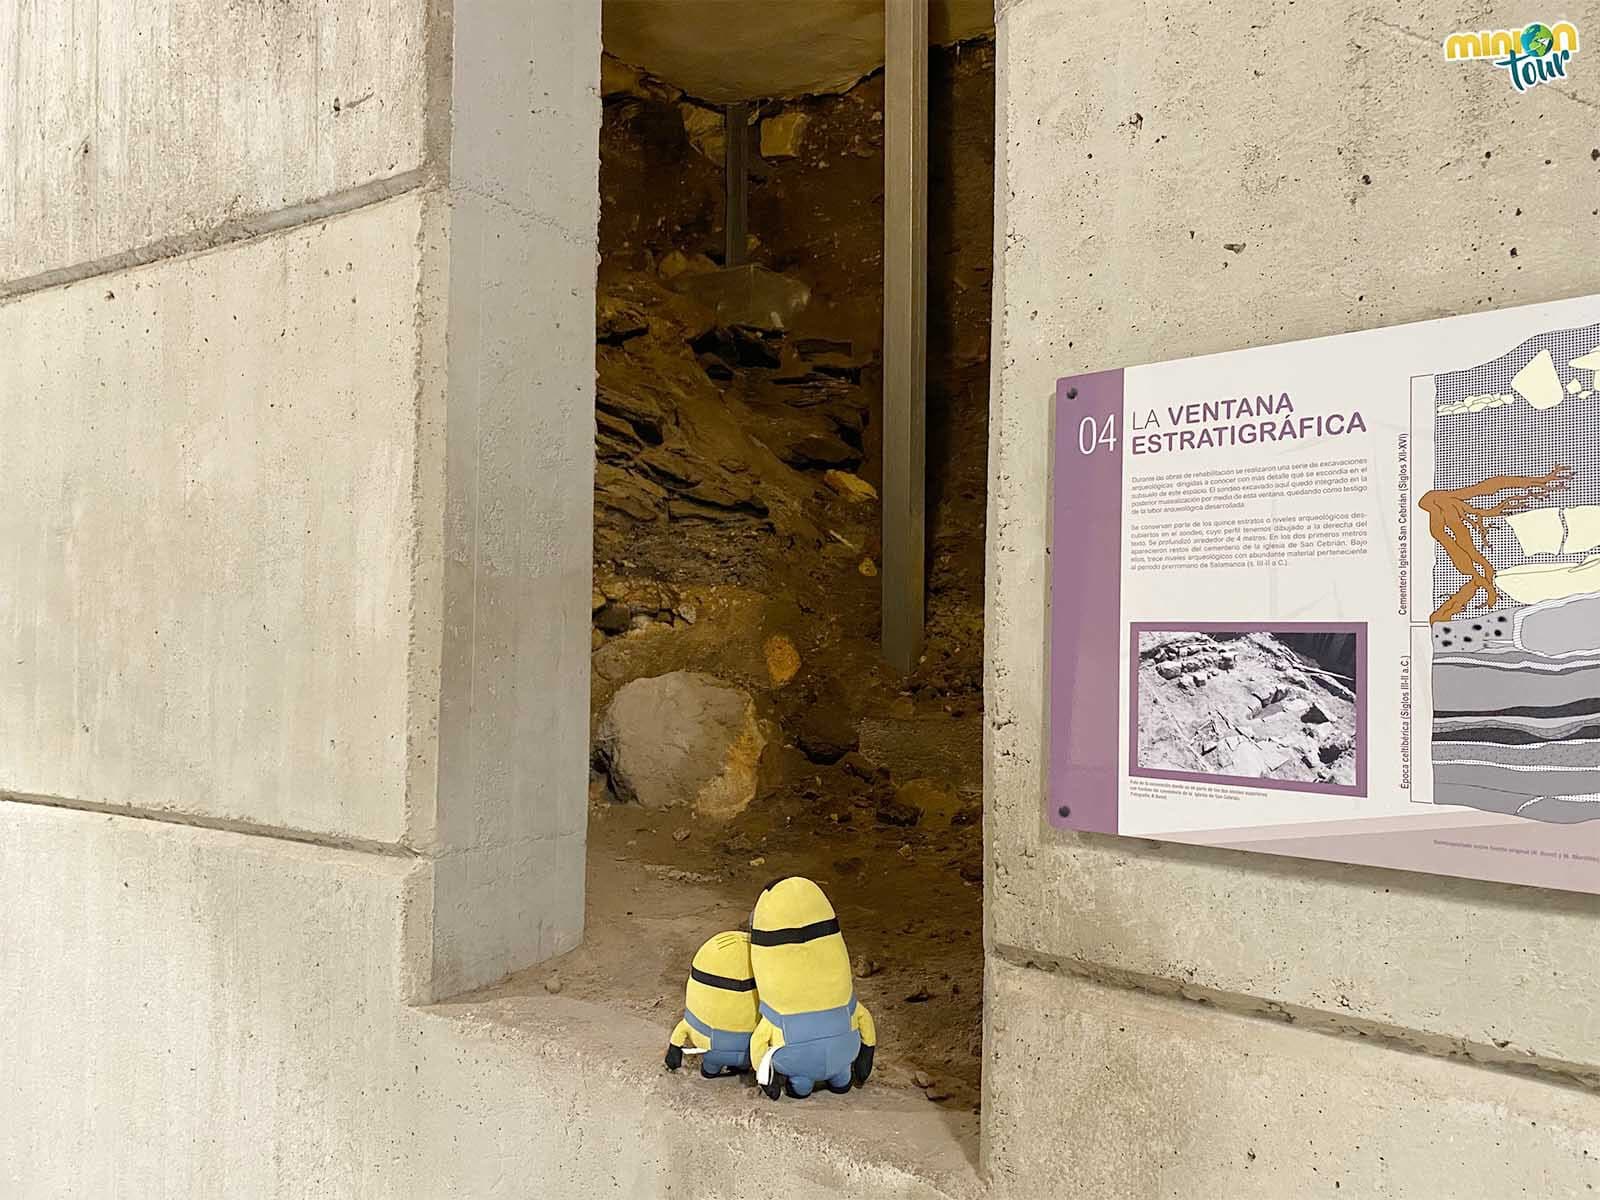 En la ruta arqueológica por Salamanca hemos descubierto una ventana estratigráfica